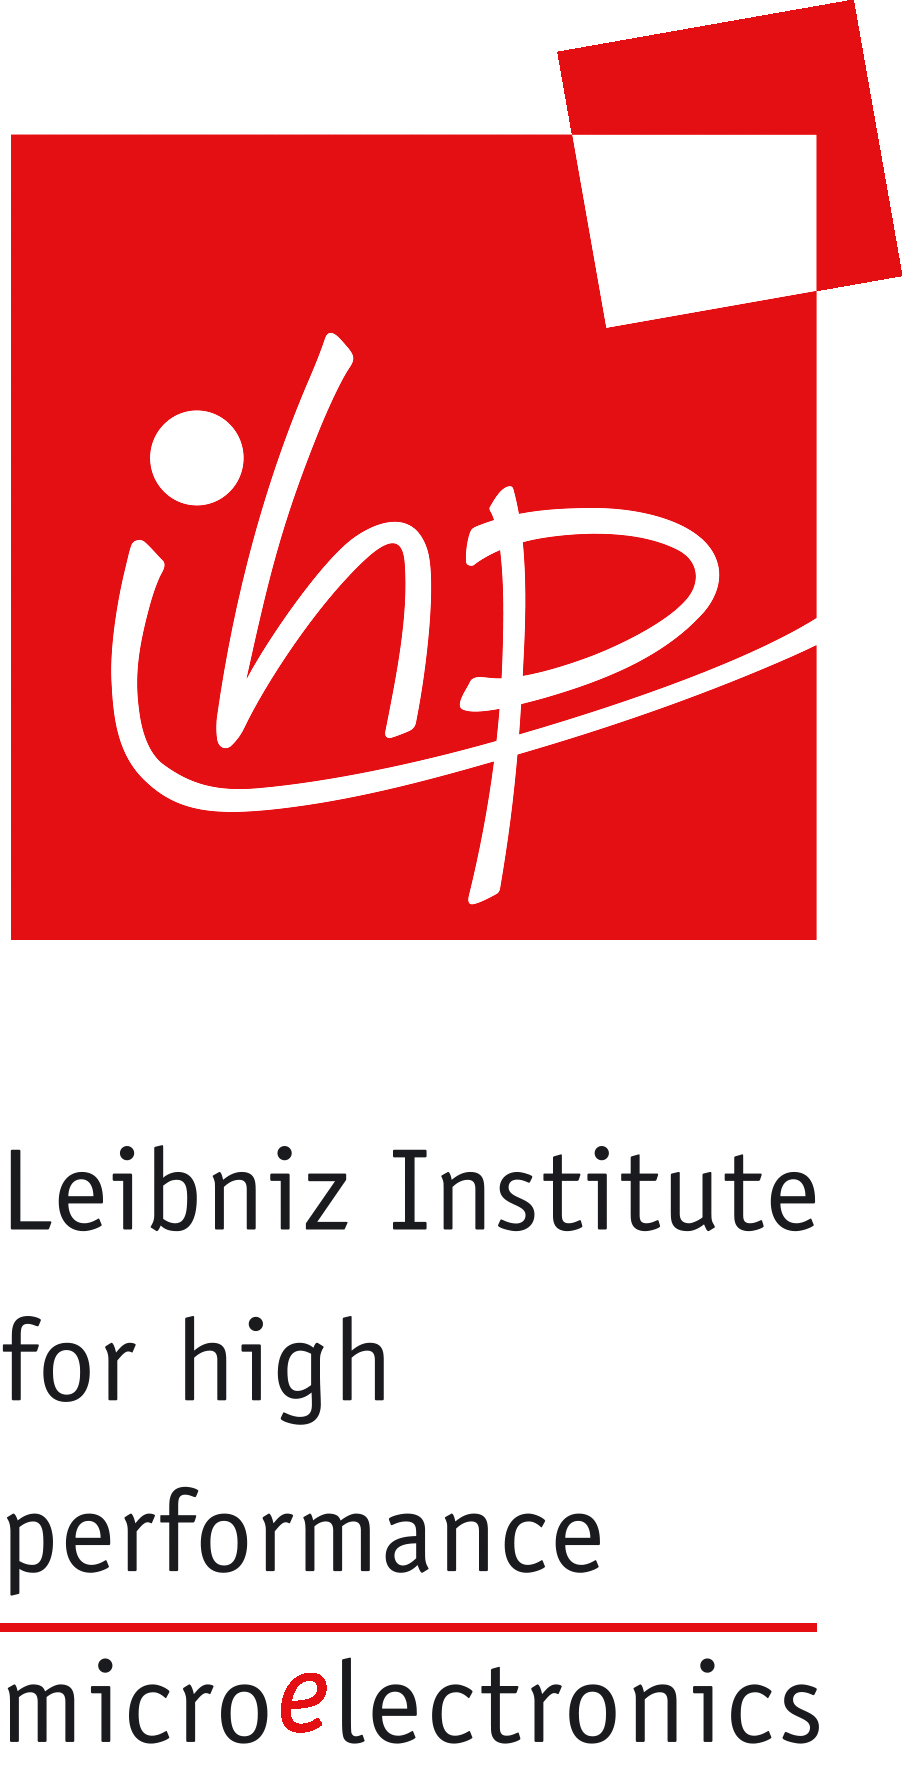 Logo: IHP - Leibniz-Institut für innovative Mikroelektronik